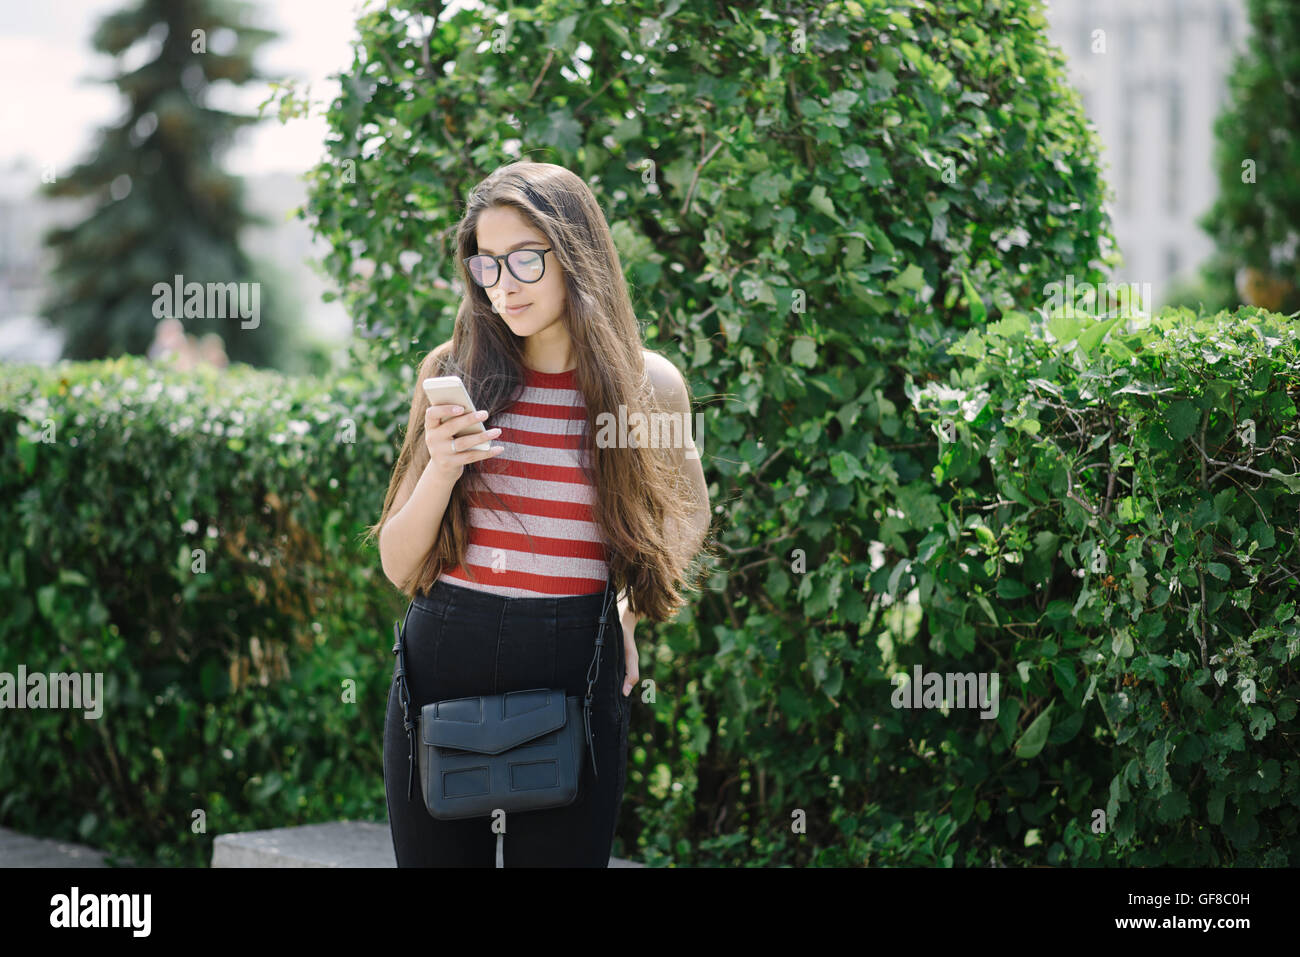 Junge asiatische Frau mit Brille mit Smartphone und Sms senden. Junge Frau auf Stadt-Hintergrund mit grünen Blättern. Stockfoto